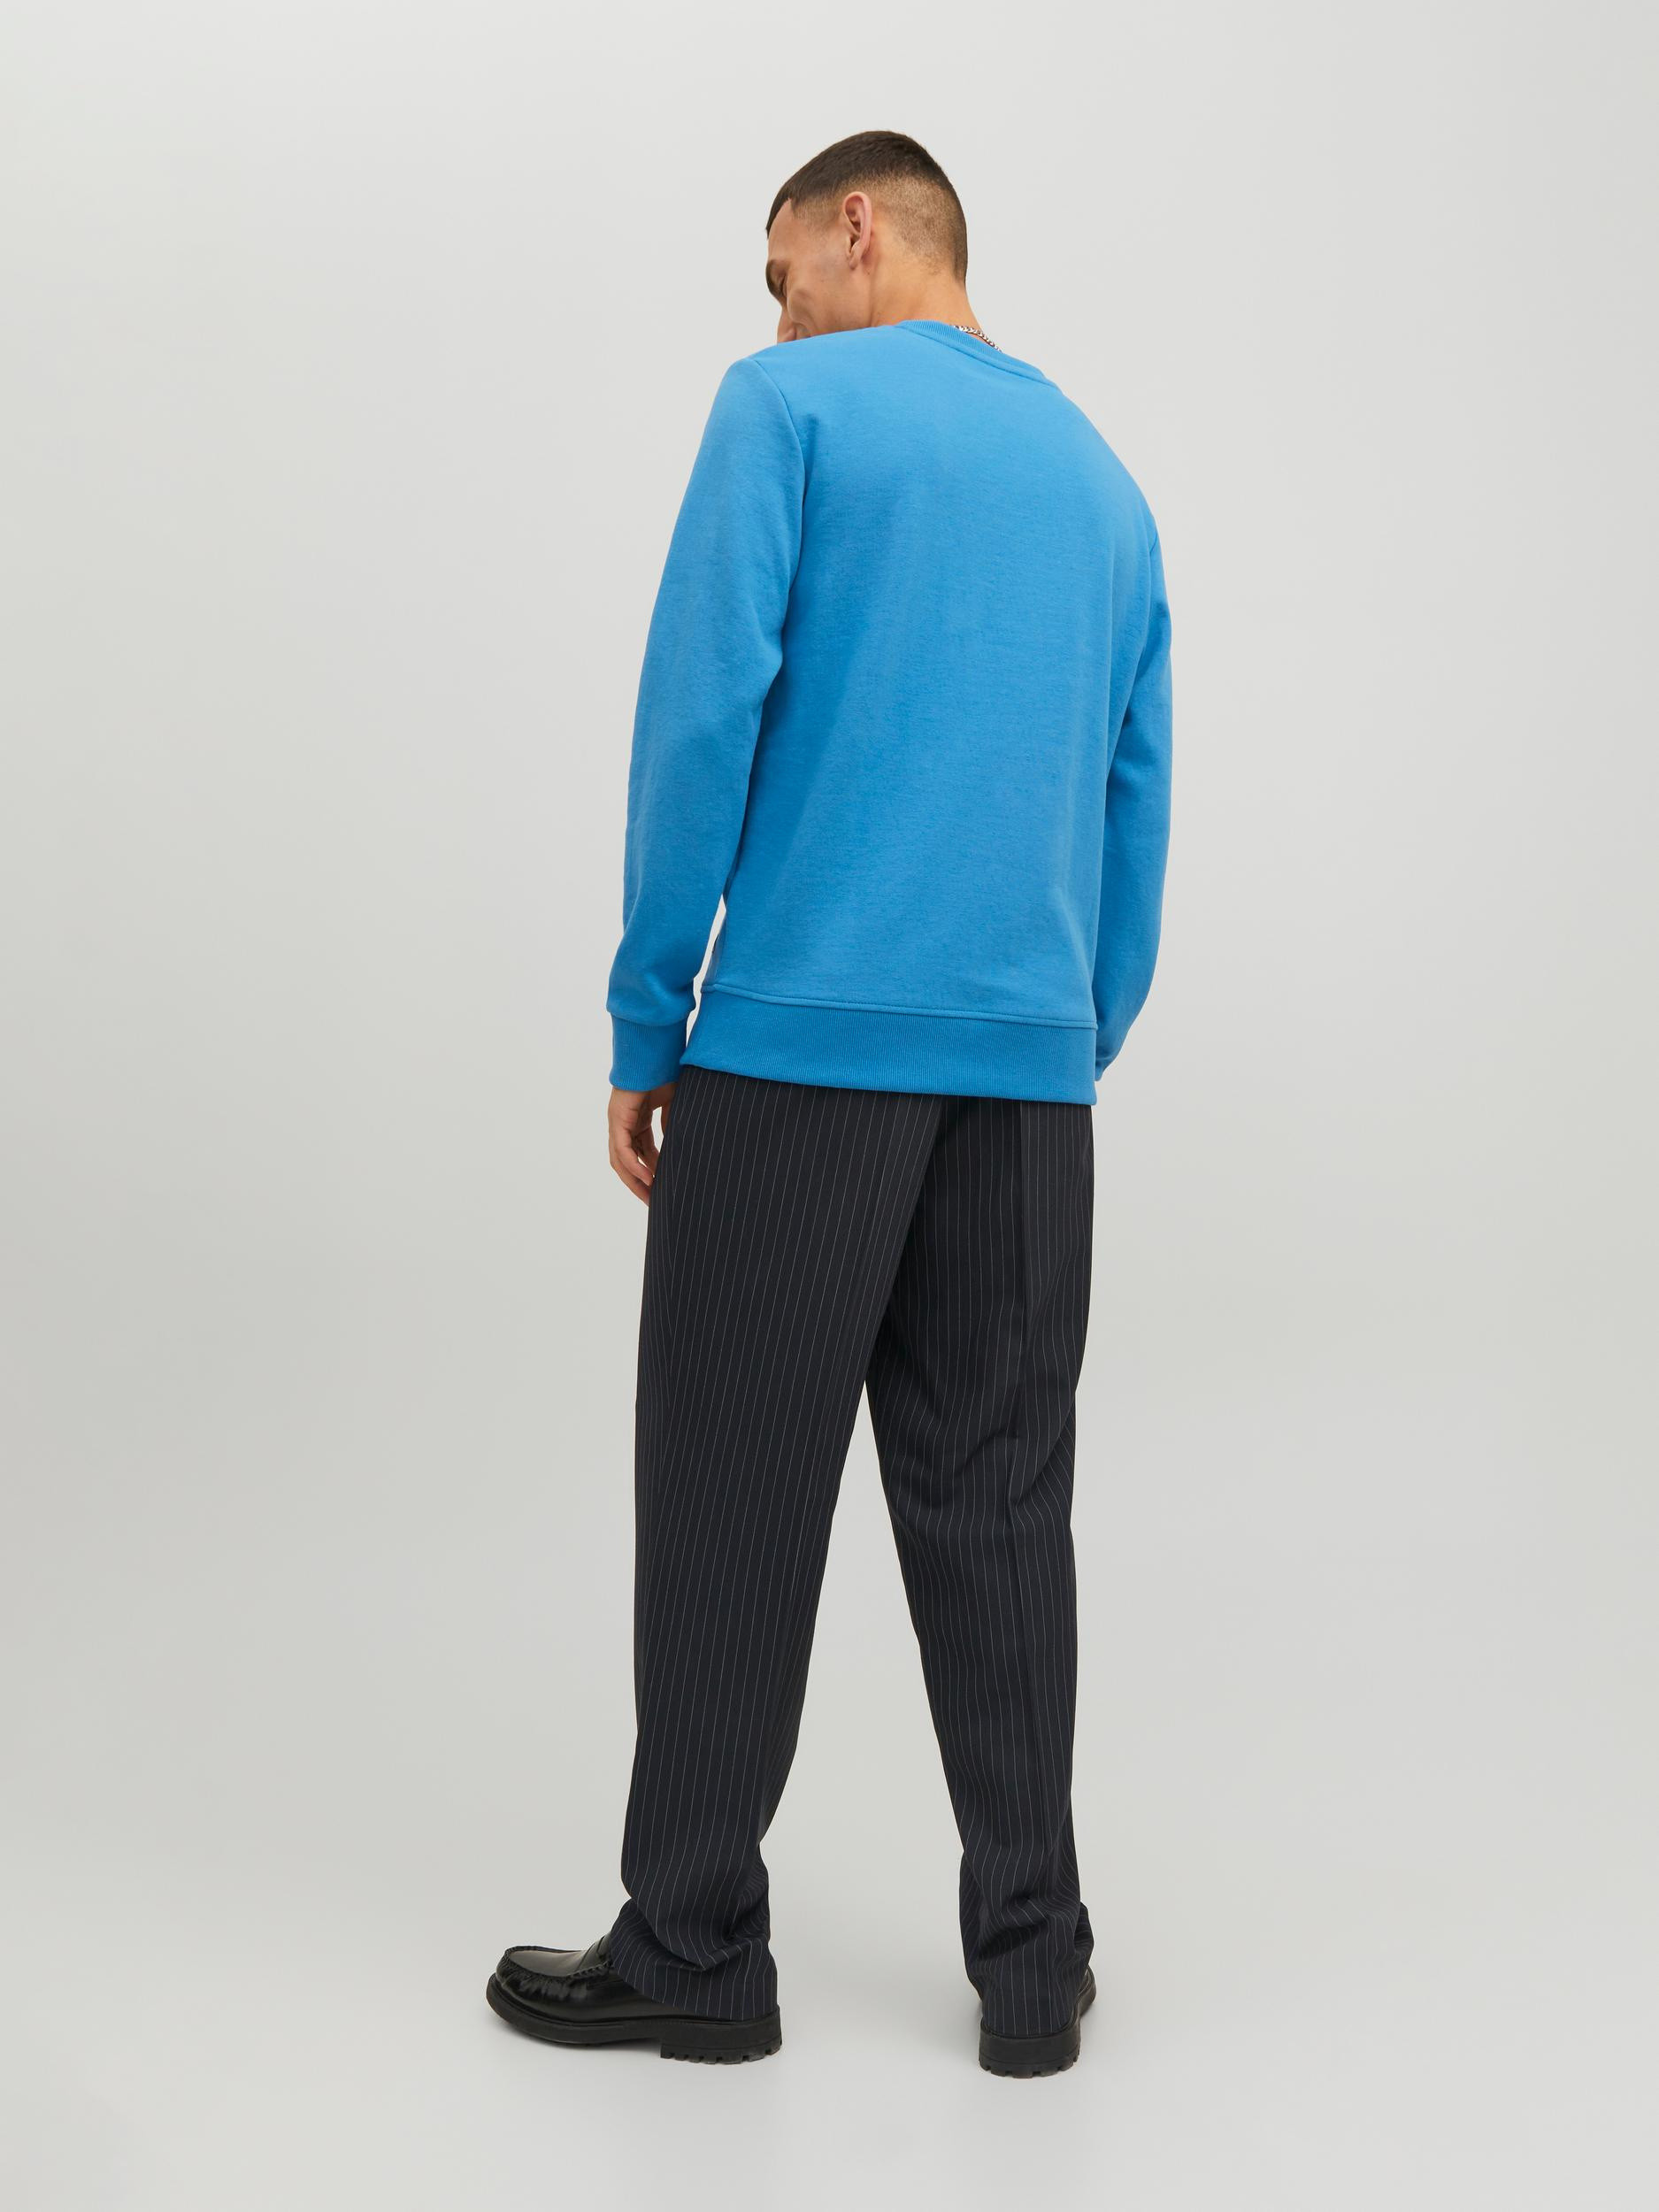 Jack & Jones - Regular-fit pullover, Light Blue, large image number 2